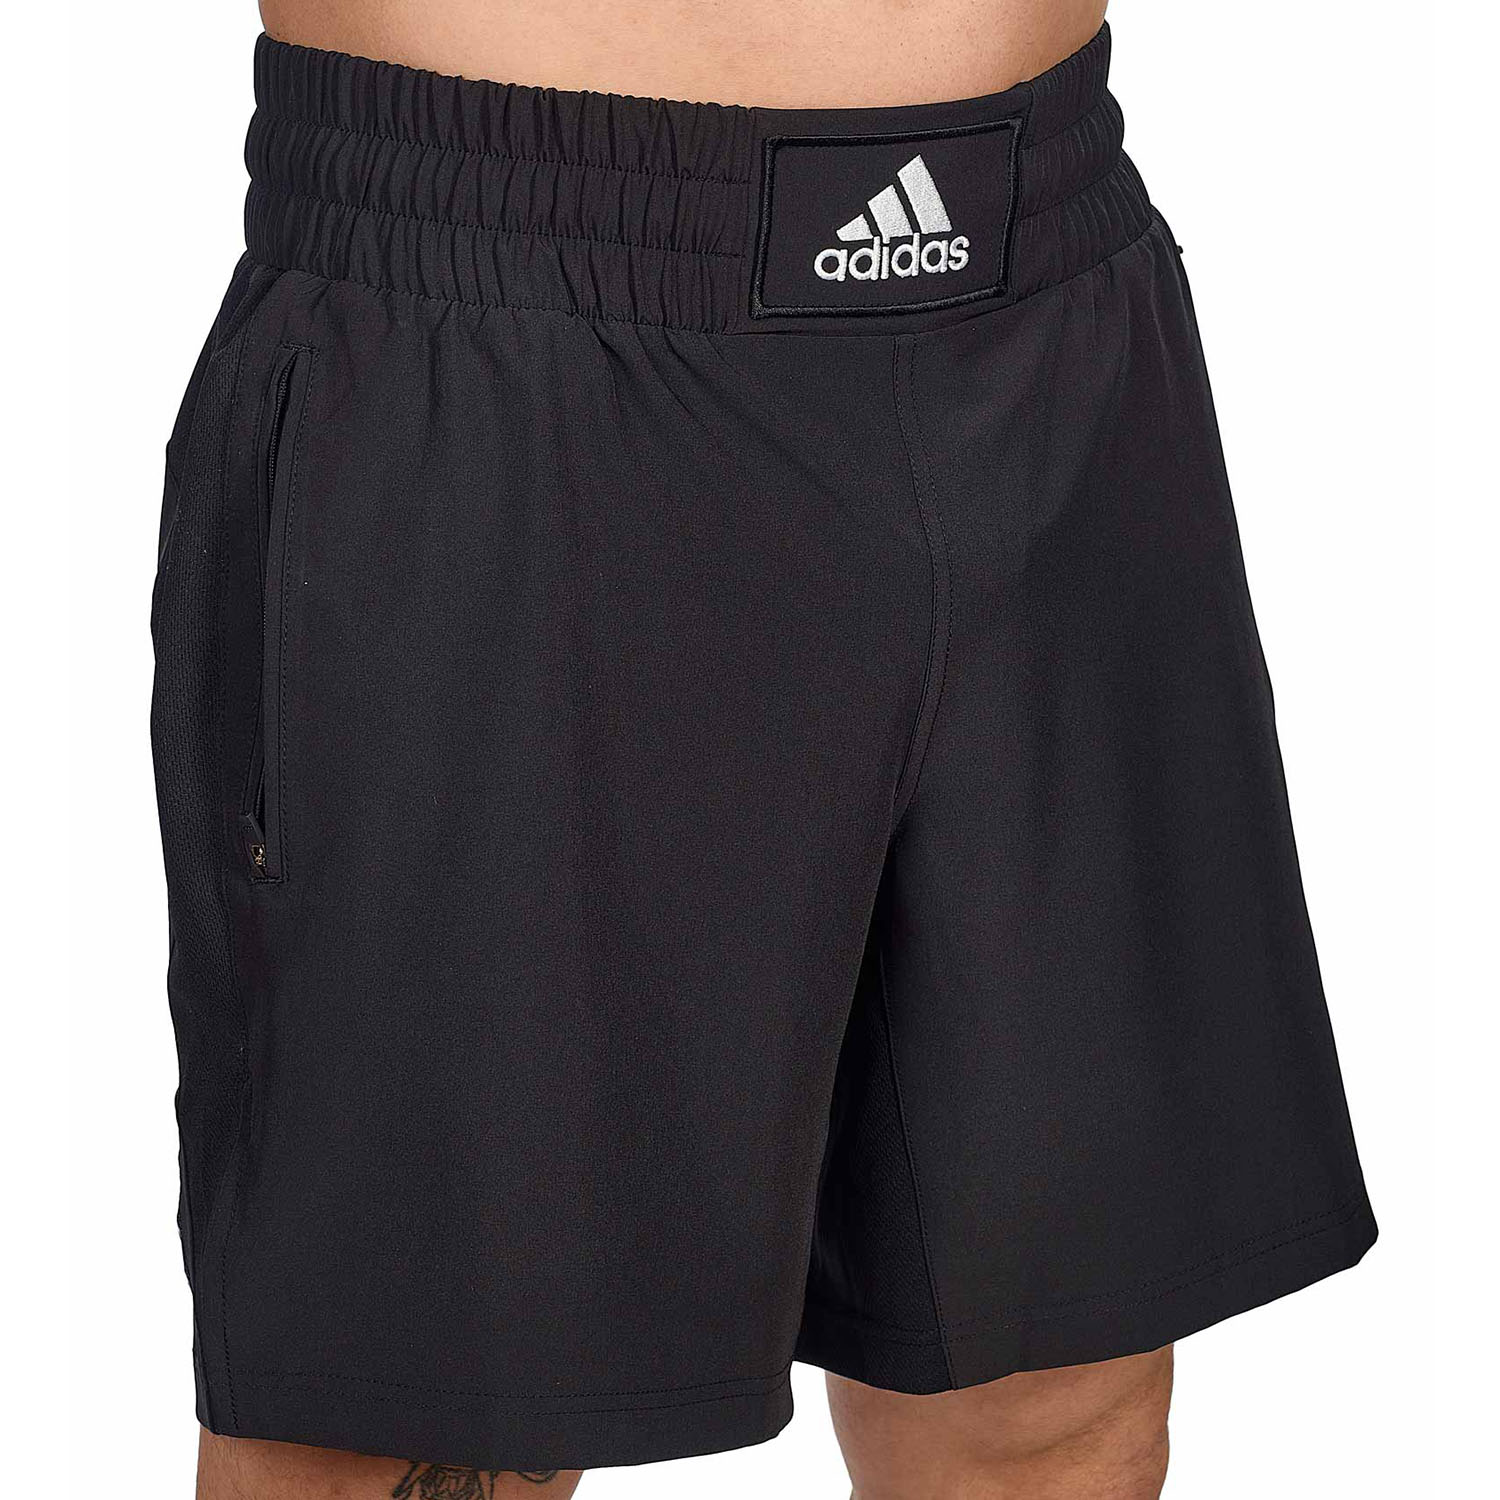 adidas Fitness Shorts, Boxwear Tech, schwarz-weiß, S